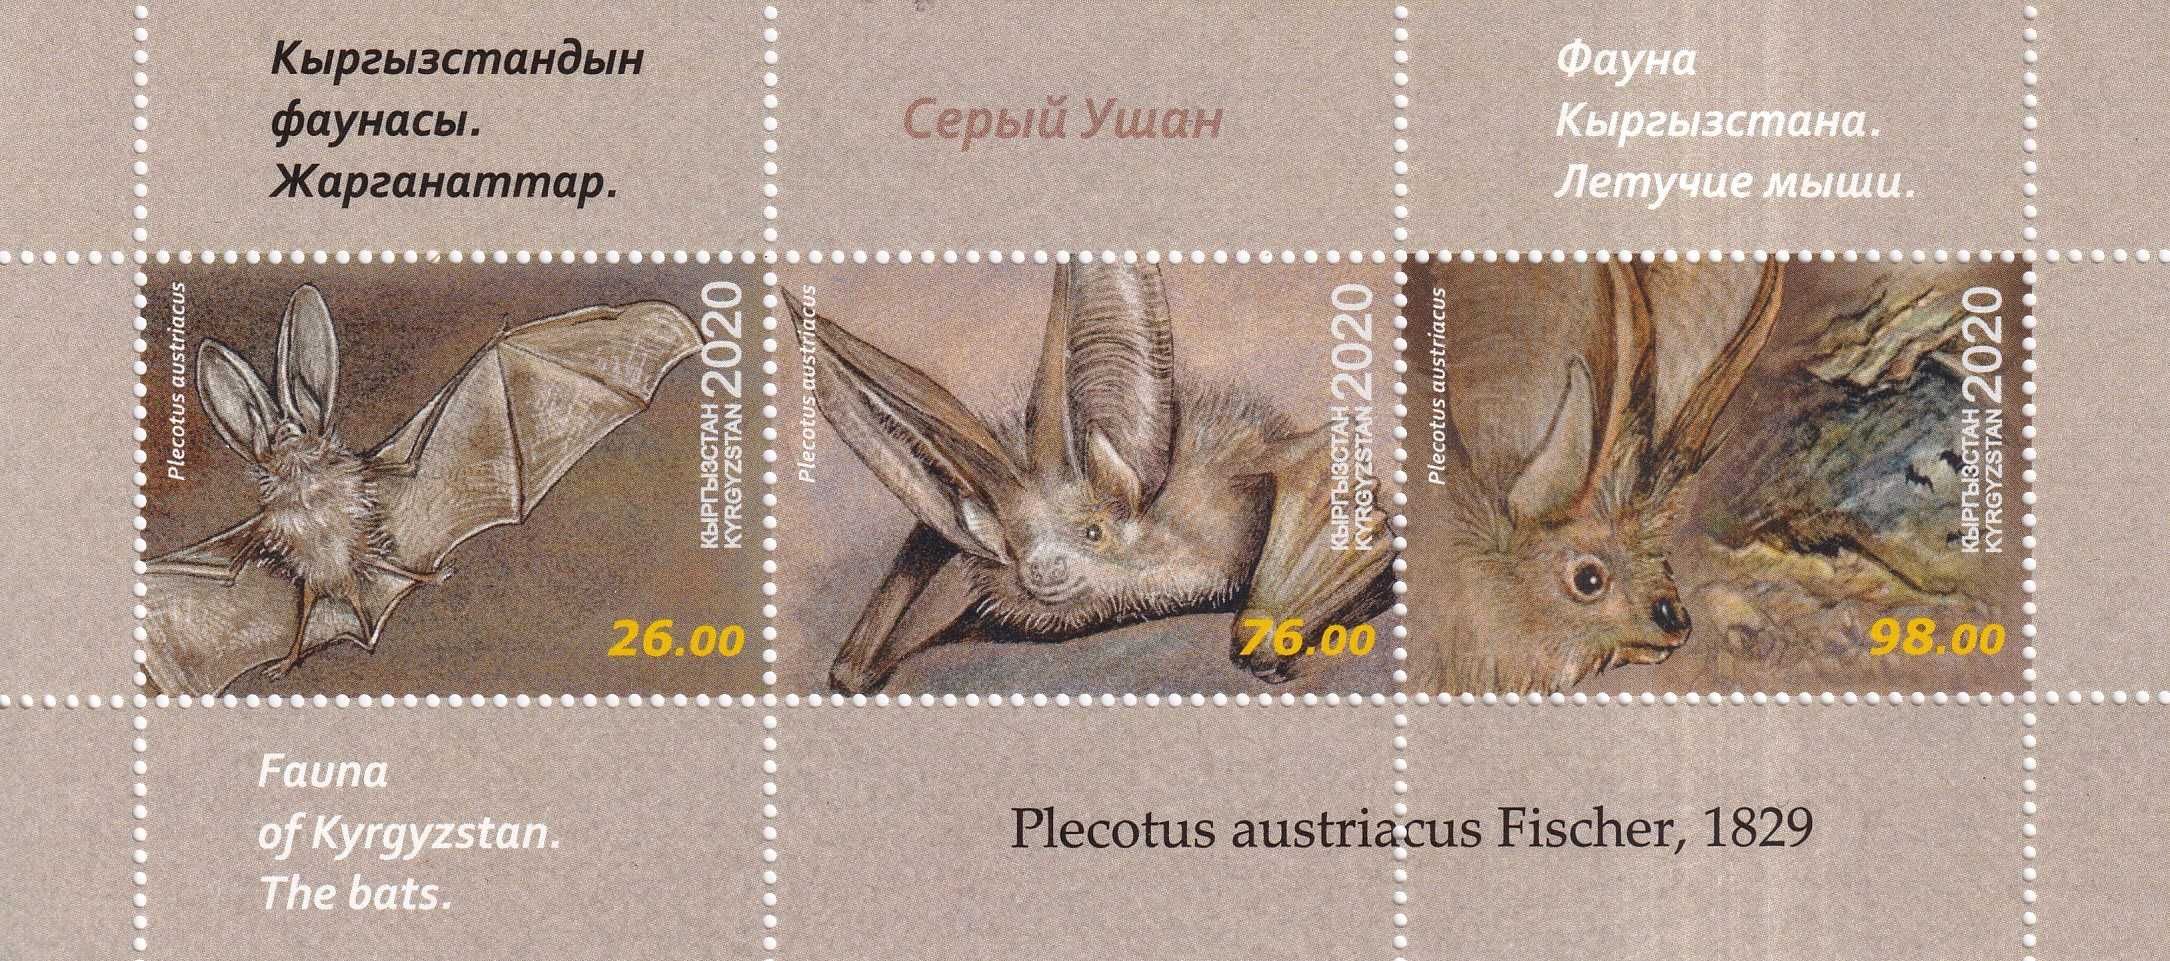 znaczki pocztowe - Kirgistan 2020 cena 14,90 zł kat.10€